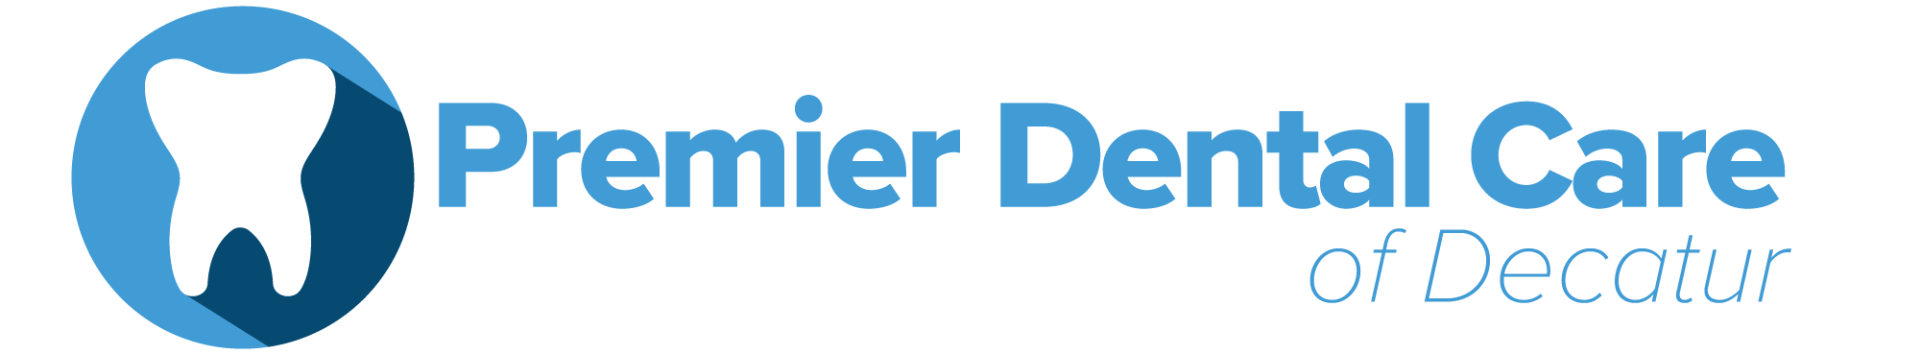 Premier Dental Care of Decatur - Logo